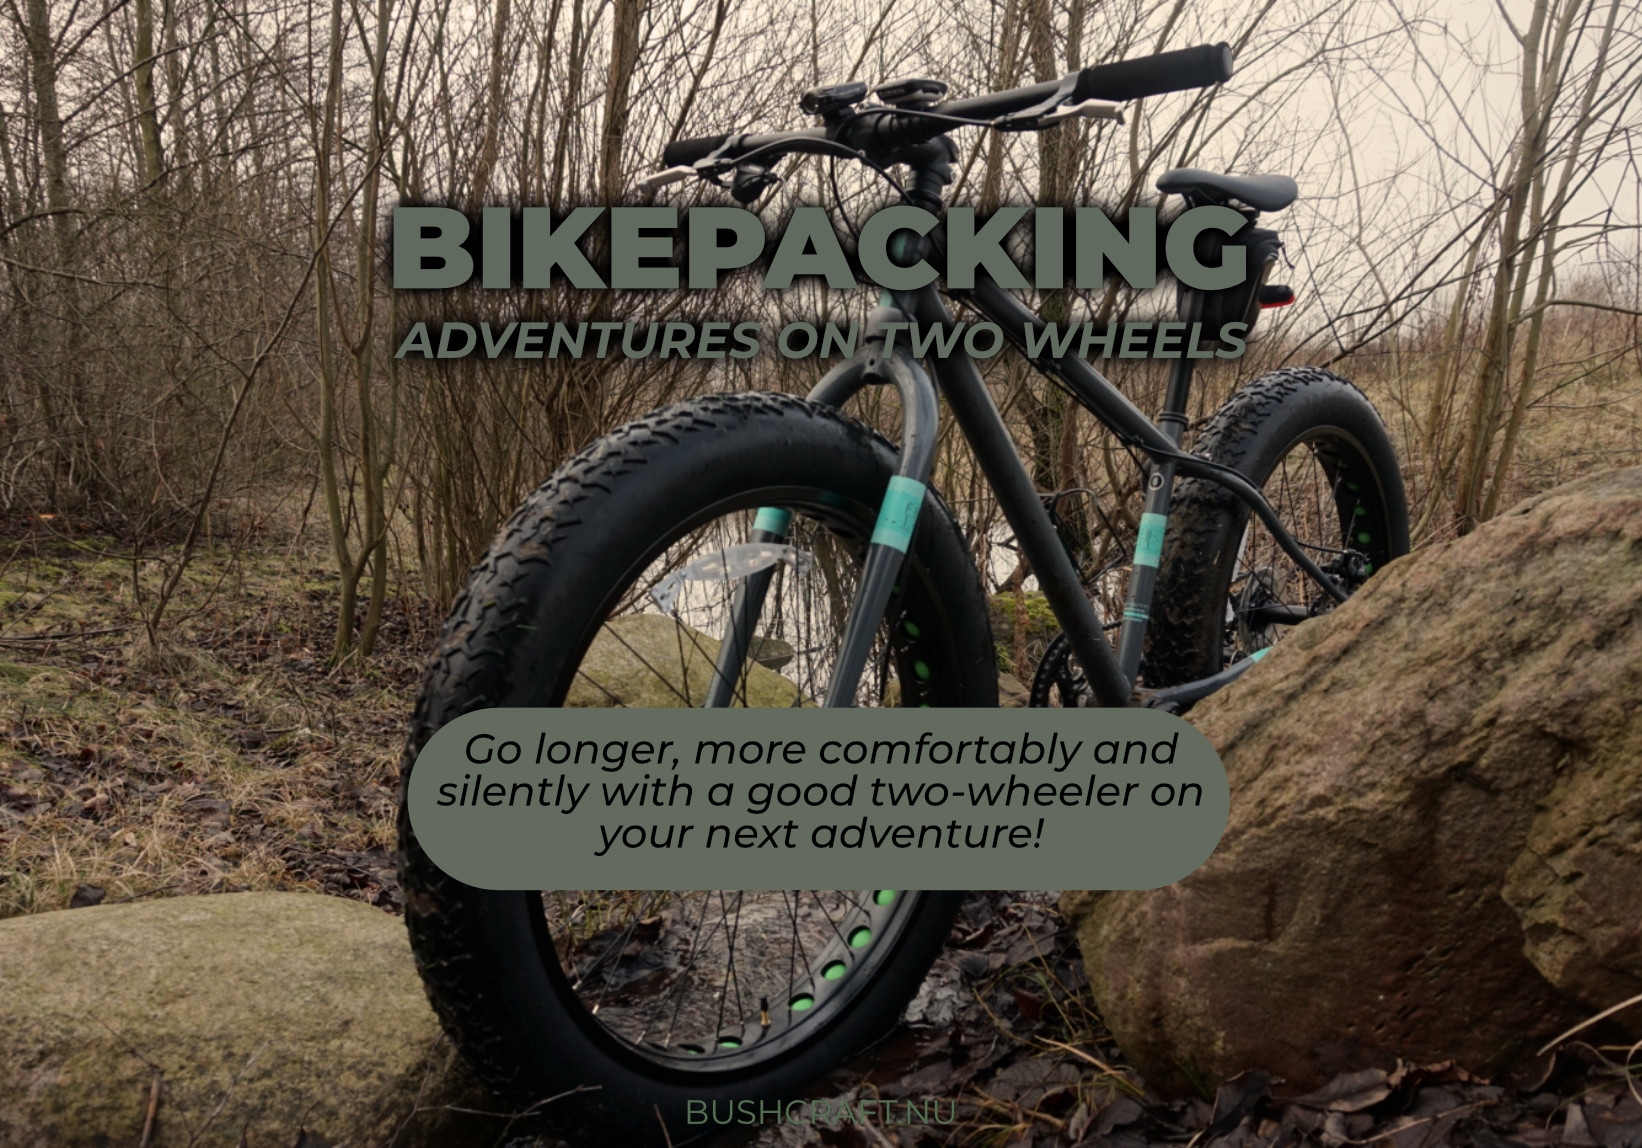 Bikepacking: Adventures on two wheels